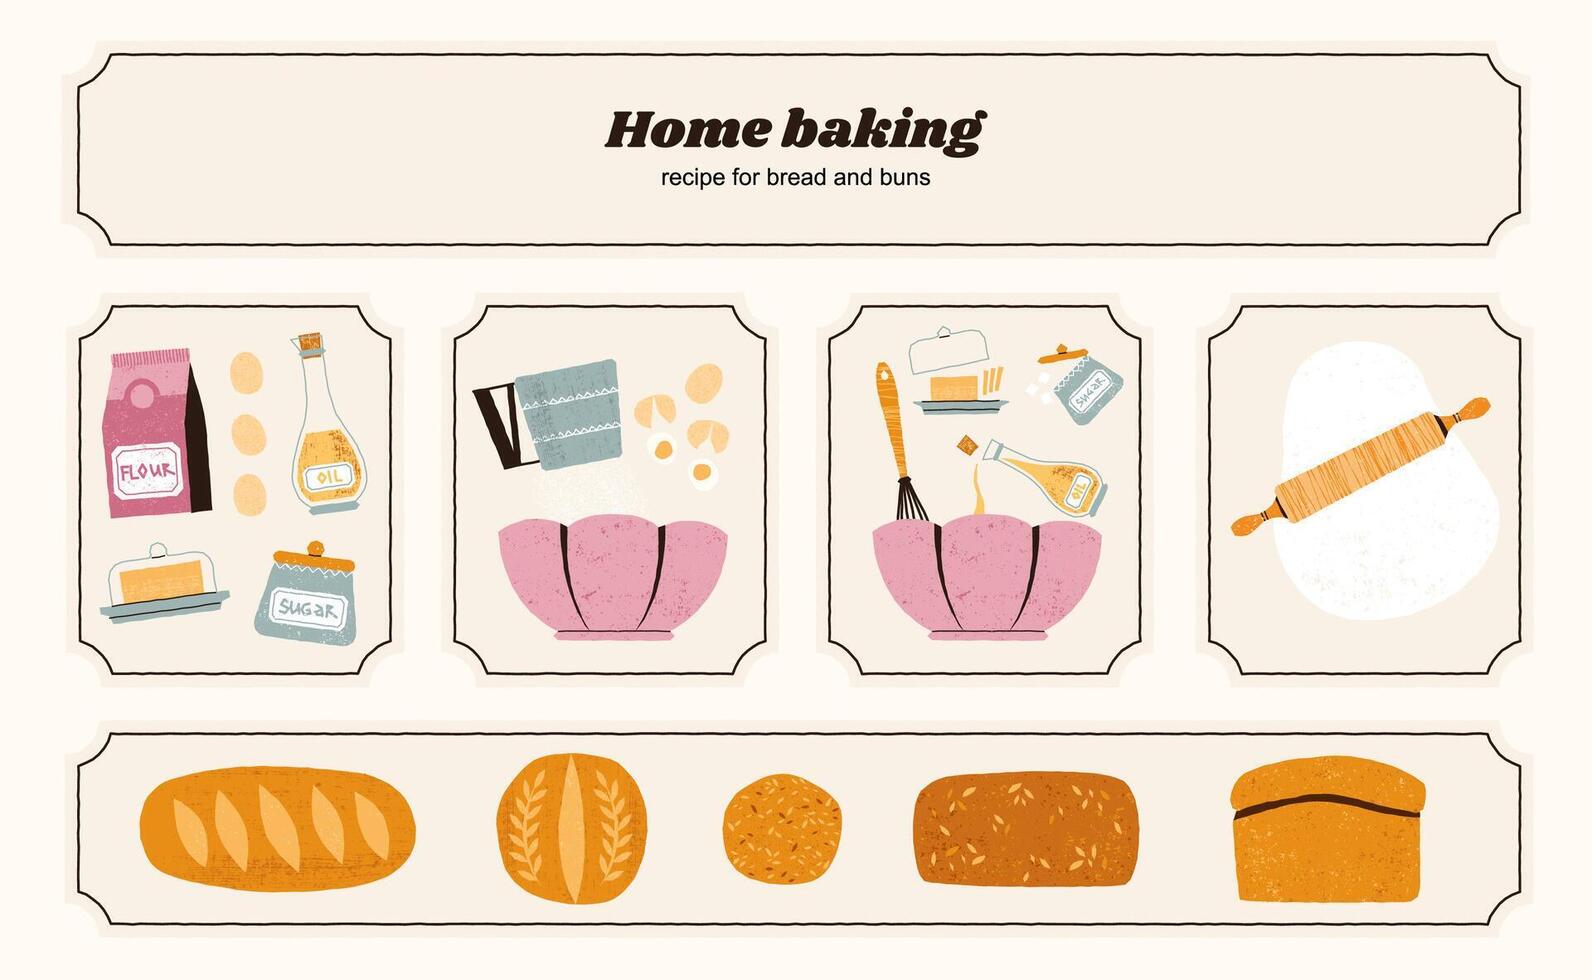 eigengemaakt brood recept. bakken ingrediënten en hulpmiddelen, traditioneel voedsel voorbereiding werkwijze, handgemaakt bakkerij producten. reeks vector